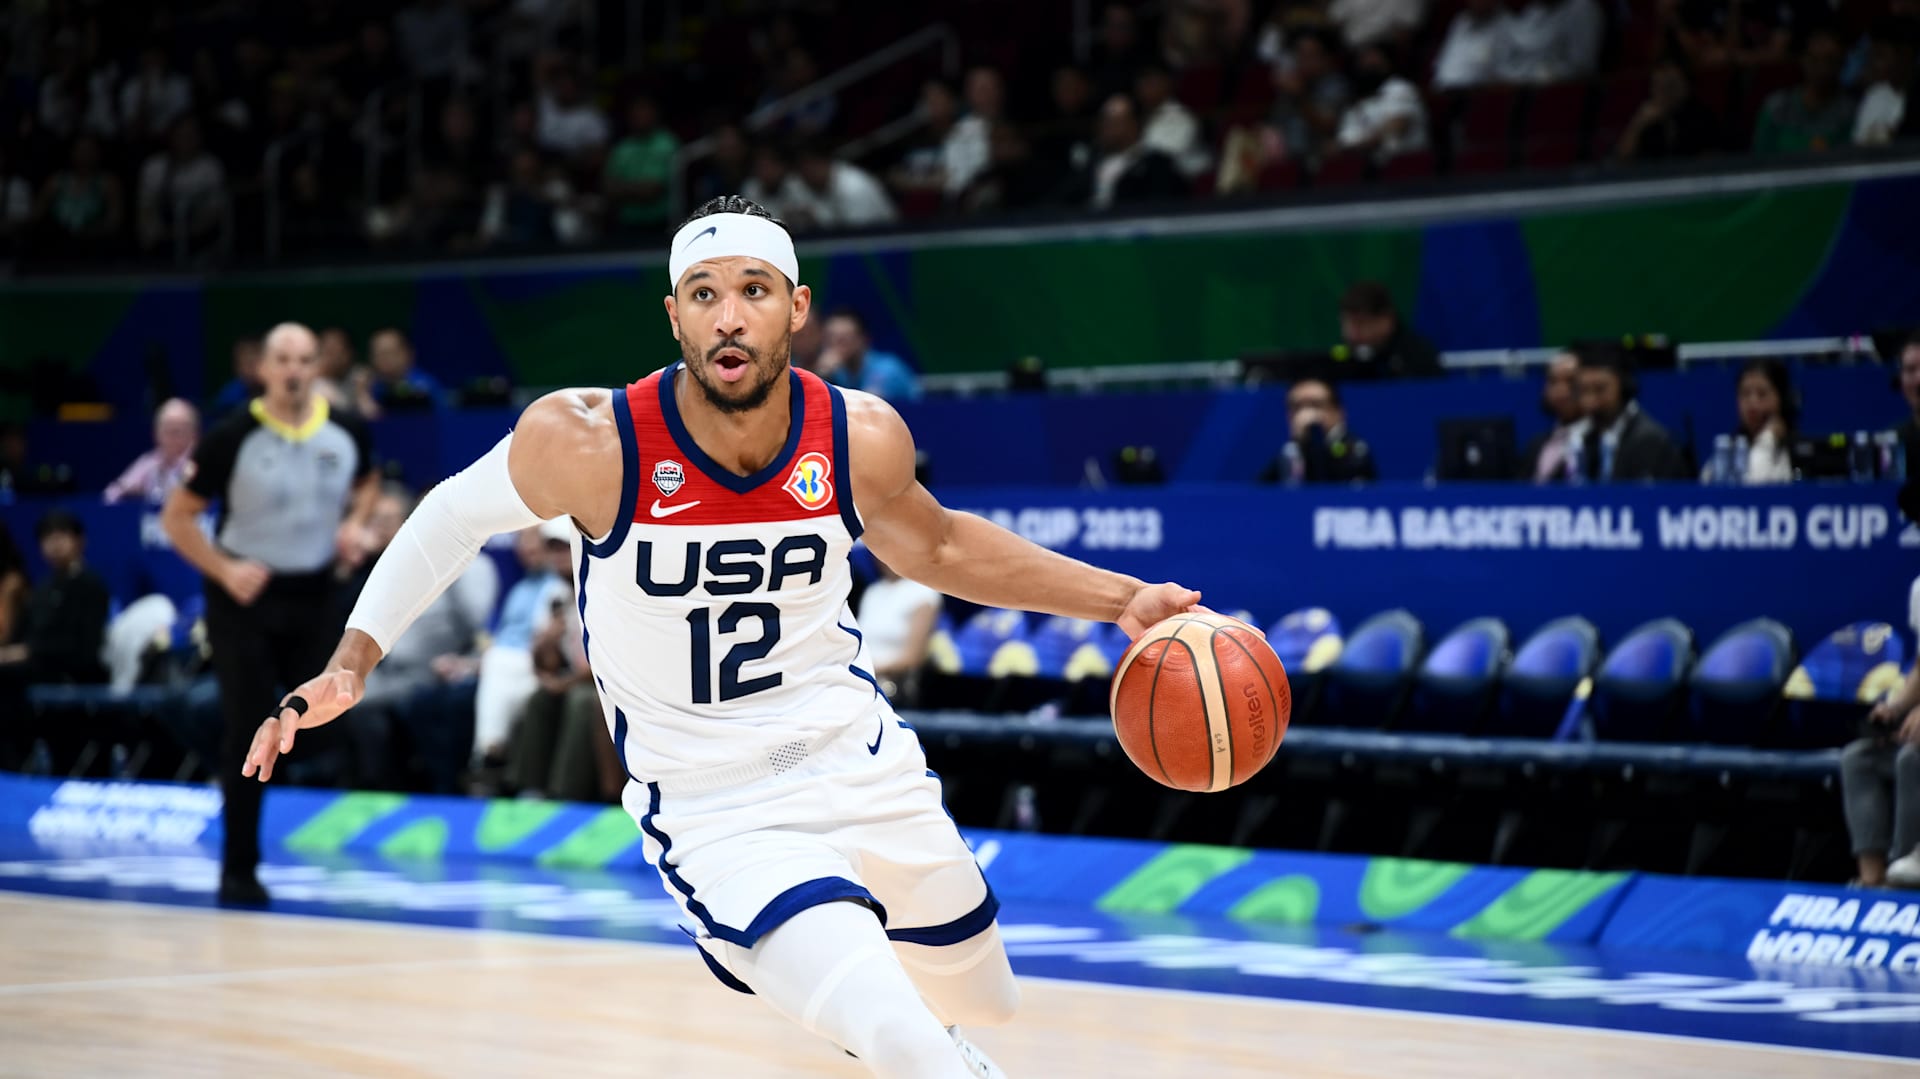 Hart to join Brunson, Bridges on Team USA's FIBA World Cup 2023